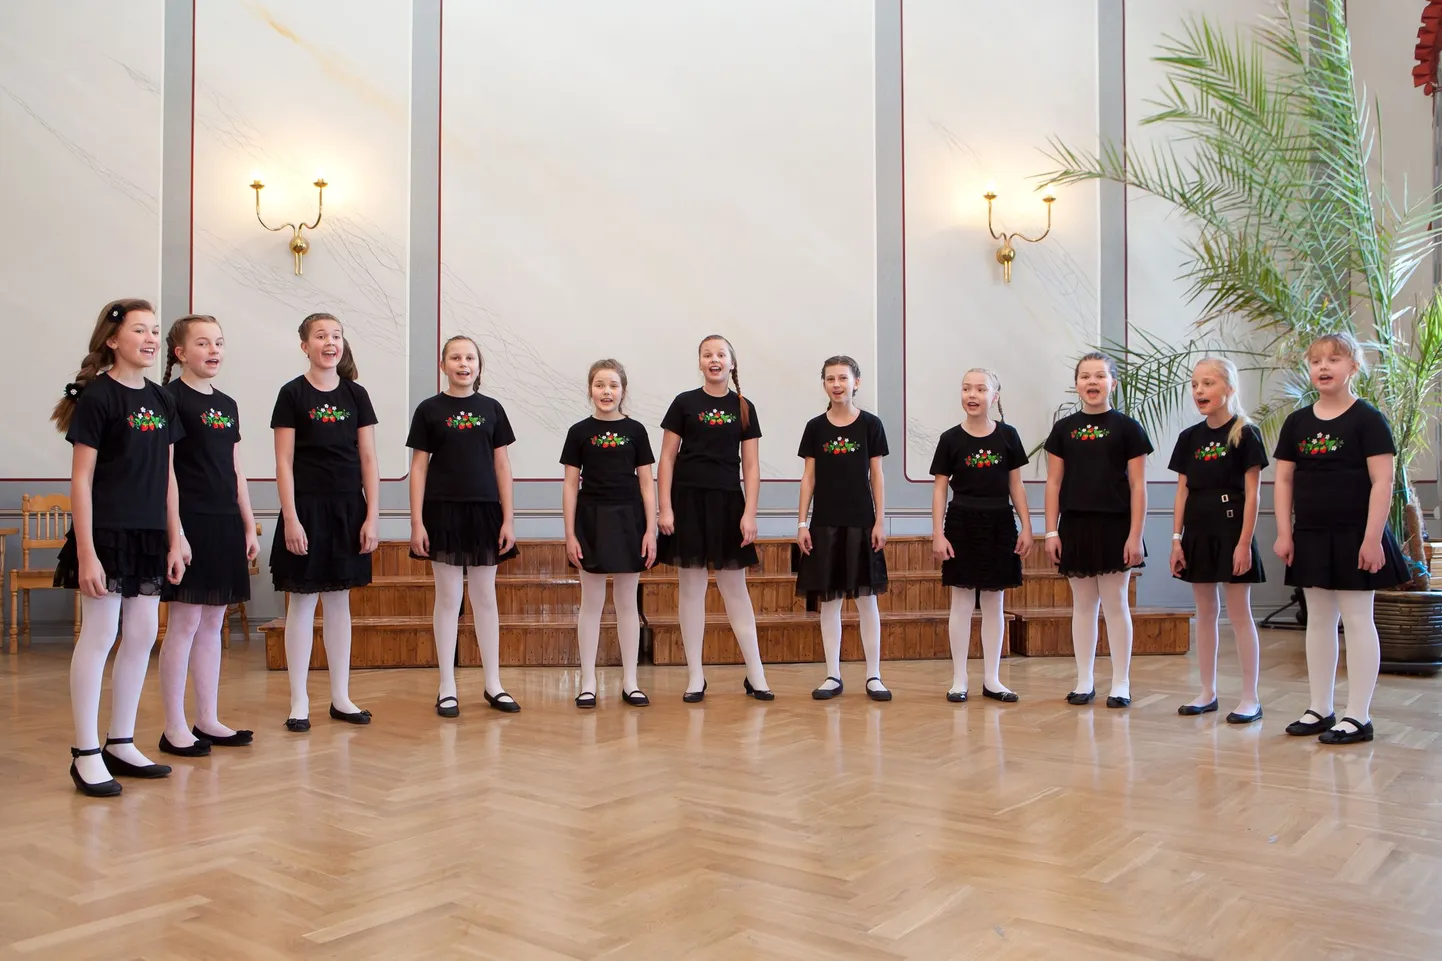 Pärnumaa koolinoorte vokaalansamblite konkursi “Ümin 2013” grand prix' võitis Toomas Volli juhendatud neidude ansambel Rõõmurullid.